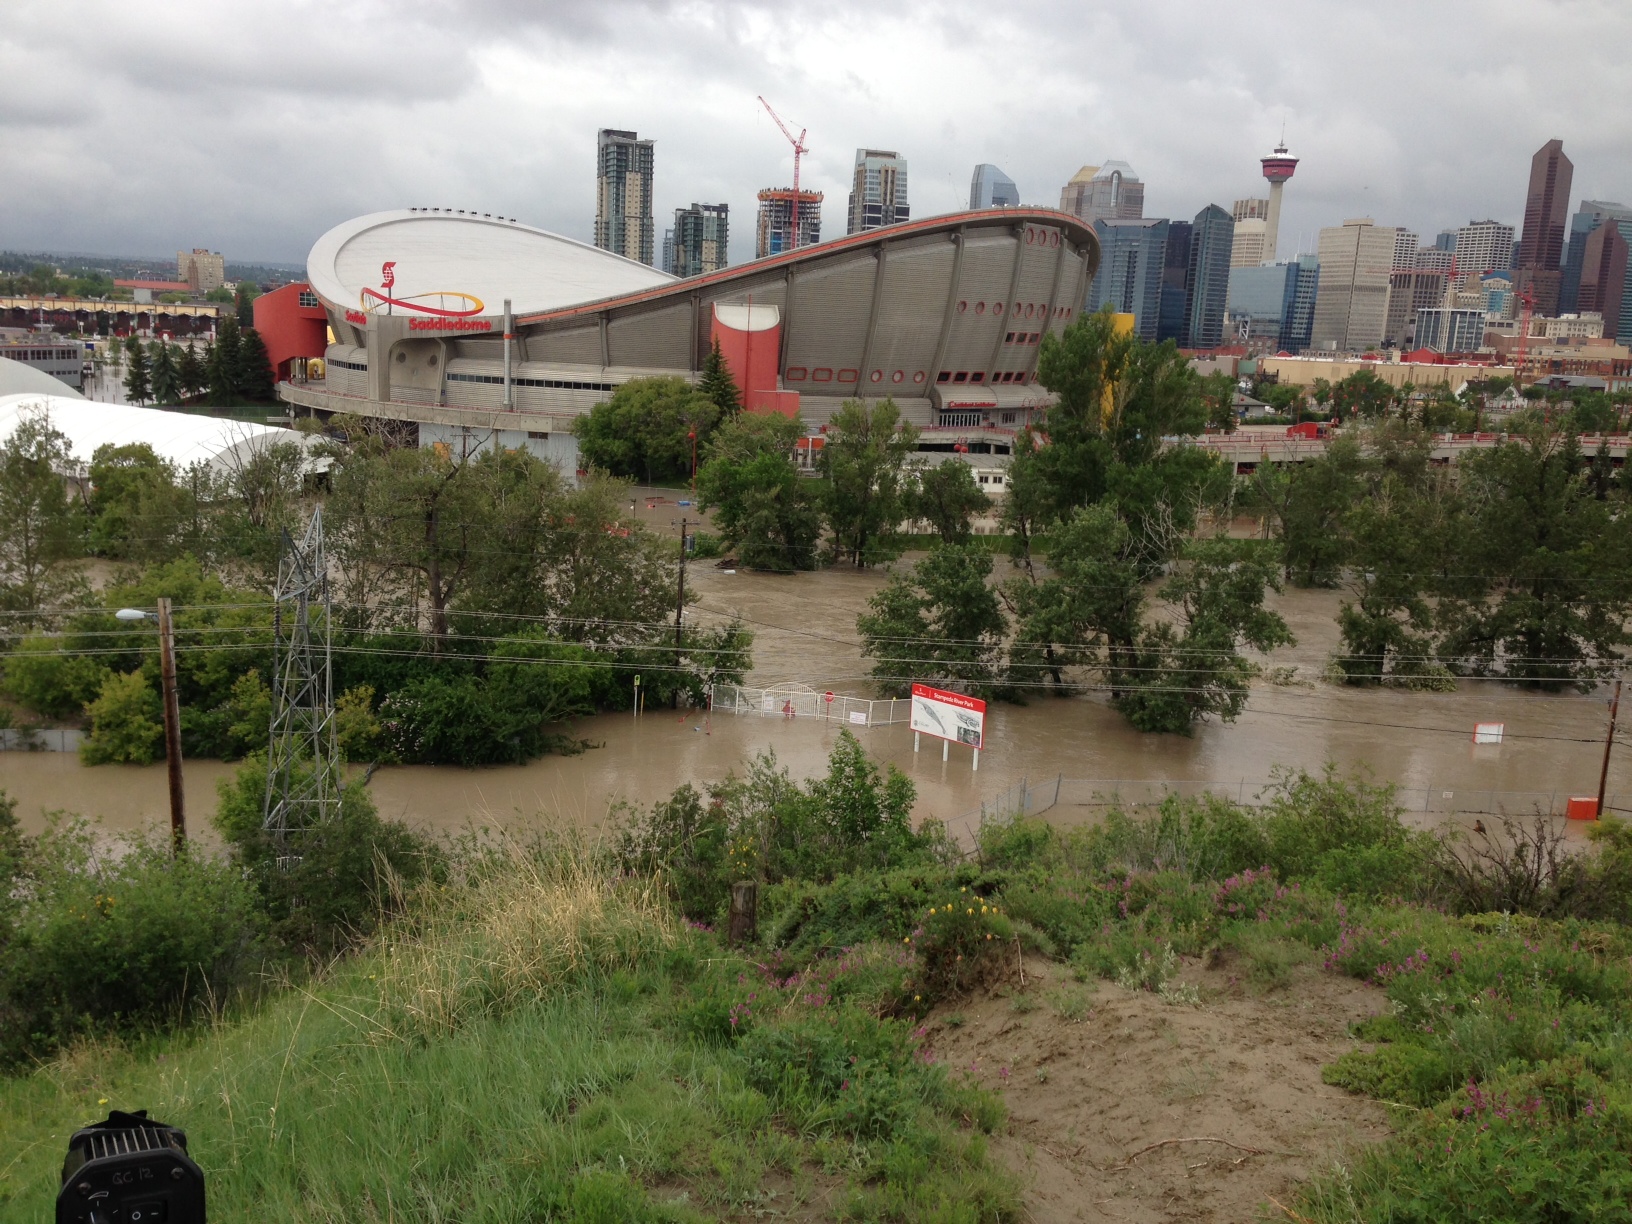 Calgary floods affect Flames, Stampede, PGA event